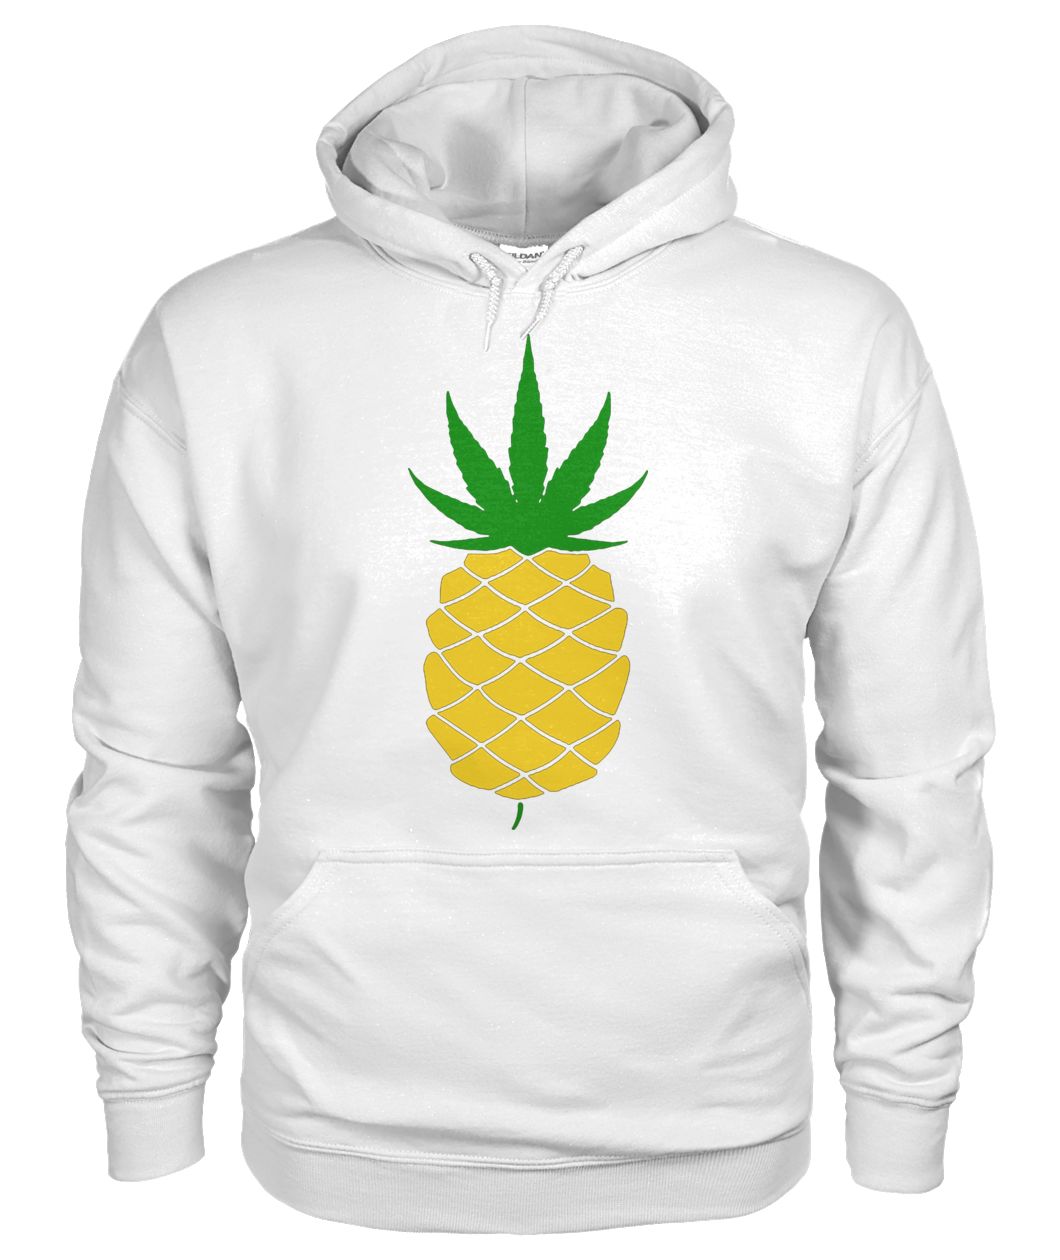 Pineapple weed leaf gildan hoodie